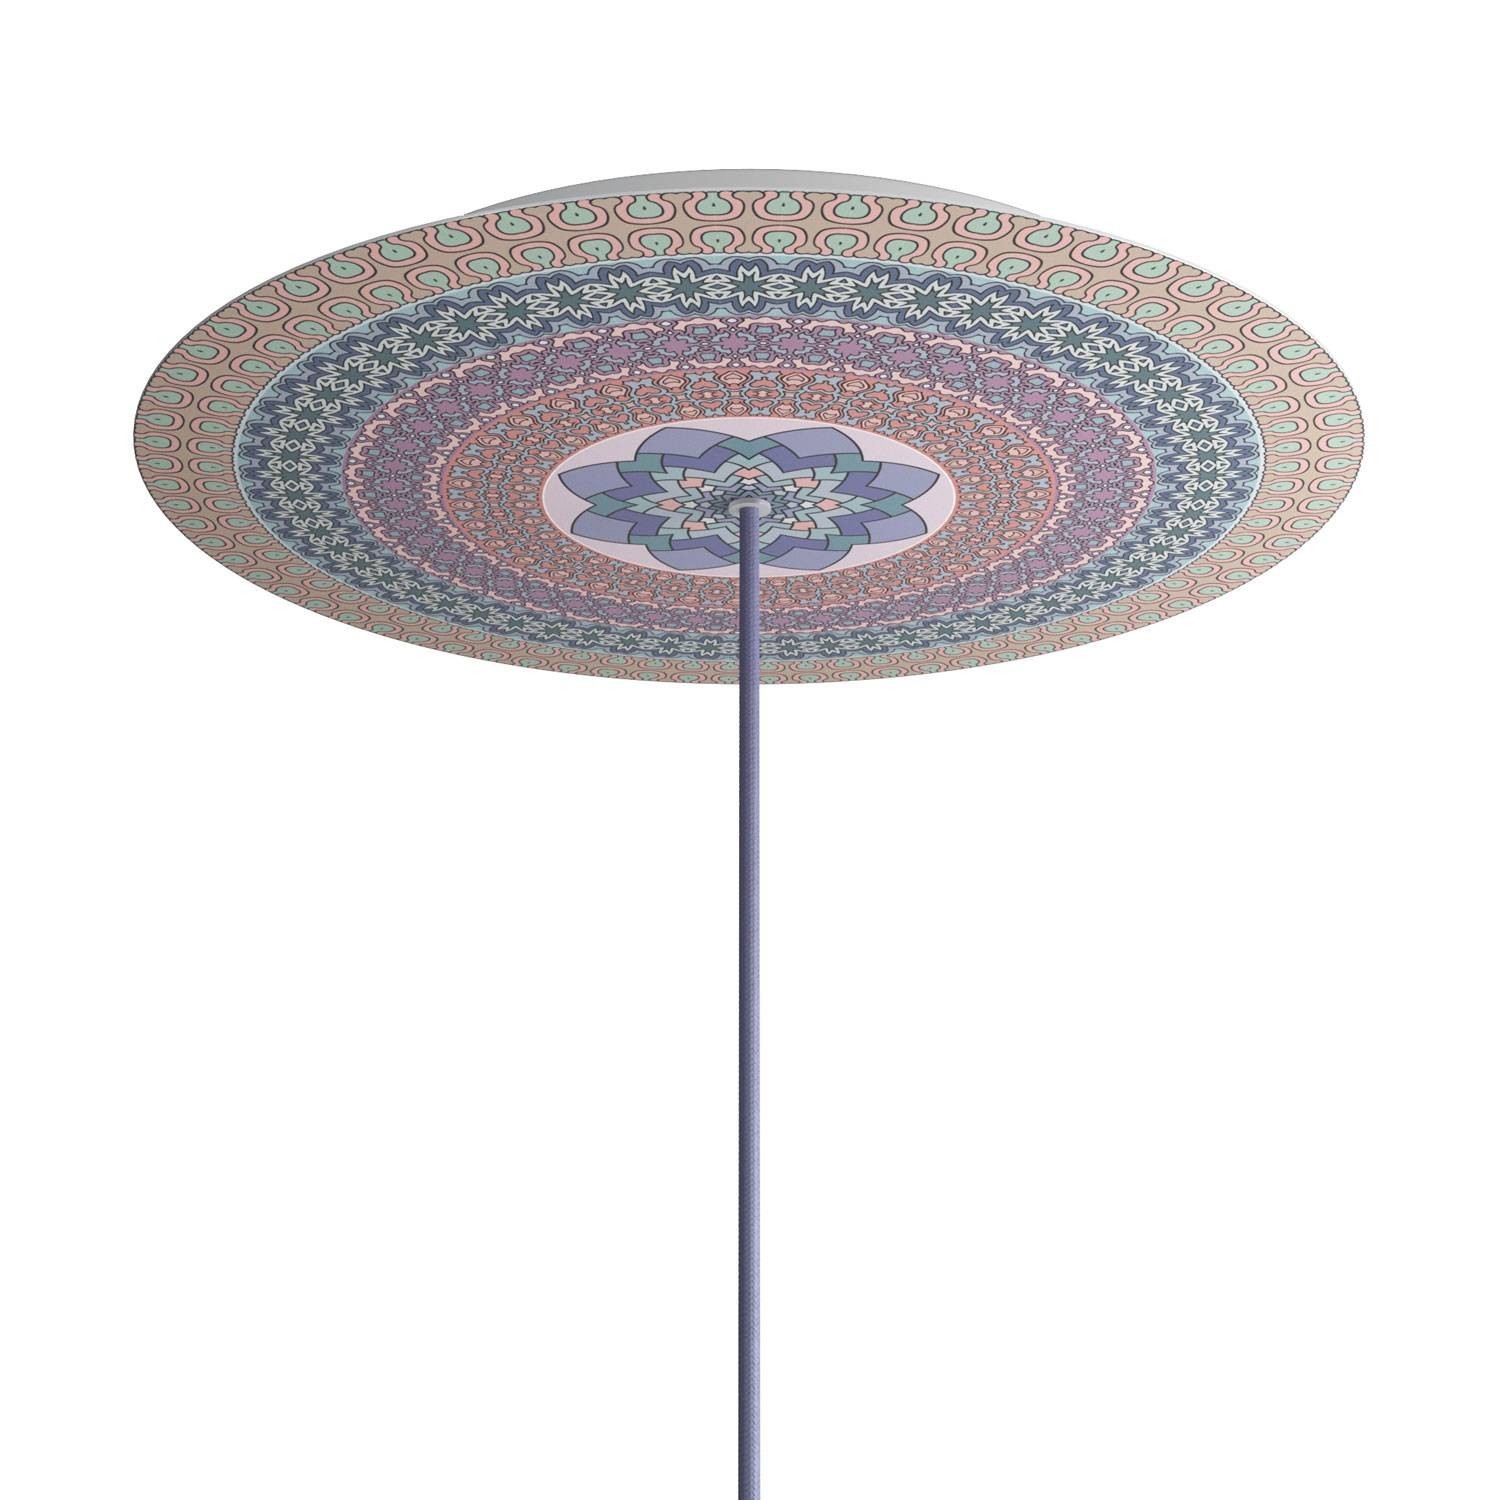 Velika okrugla dekoracija za stropnu rozetu 400 mm - Rose-One sistem s 1 rupom i 4 bočne rupe - PROMO